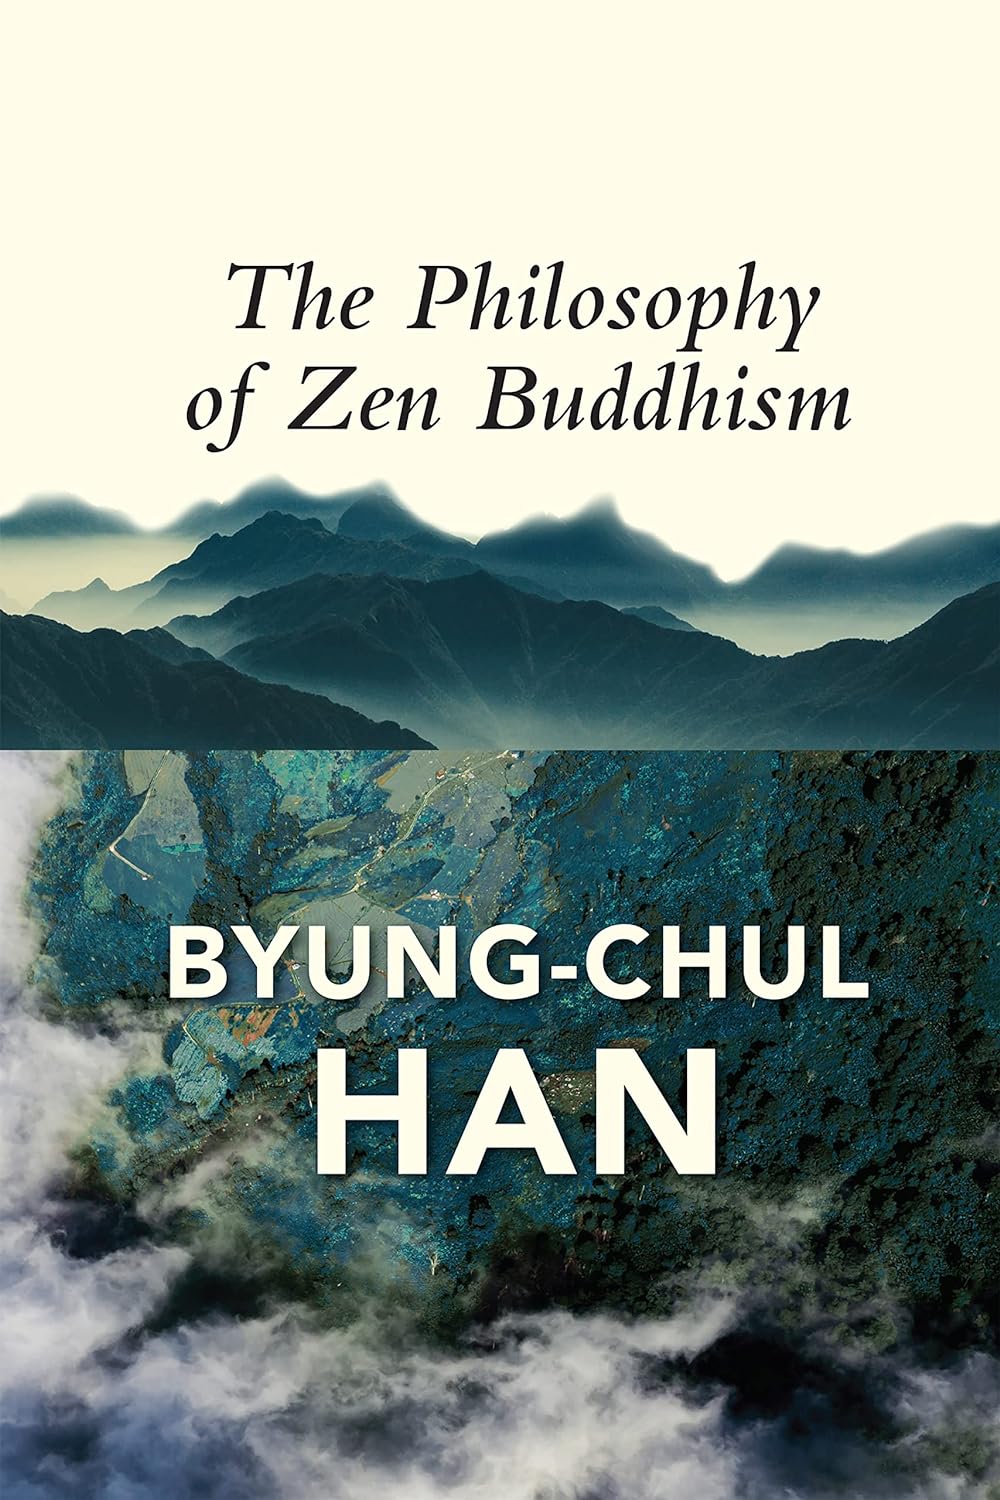 The Philosophy of Zen Buddhism ร้านหนังสือและสิ่งของ เป็นร้านหนังสือภาษาอังกฤษหายาก และร้านกาแฟ หรือ บุ๊คคาเฟ่ ตั้งอยู่สุขุมวิท กรุงเทพ